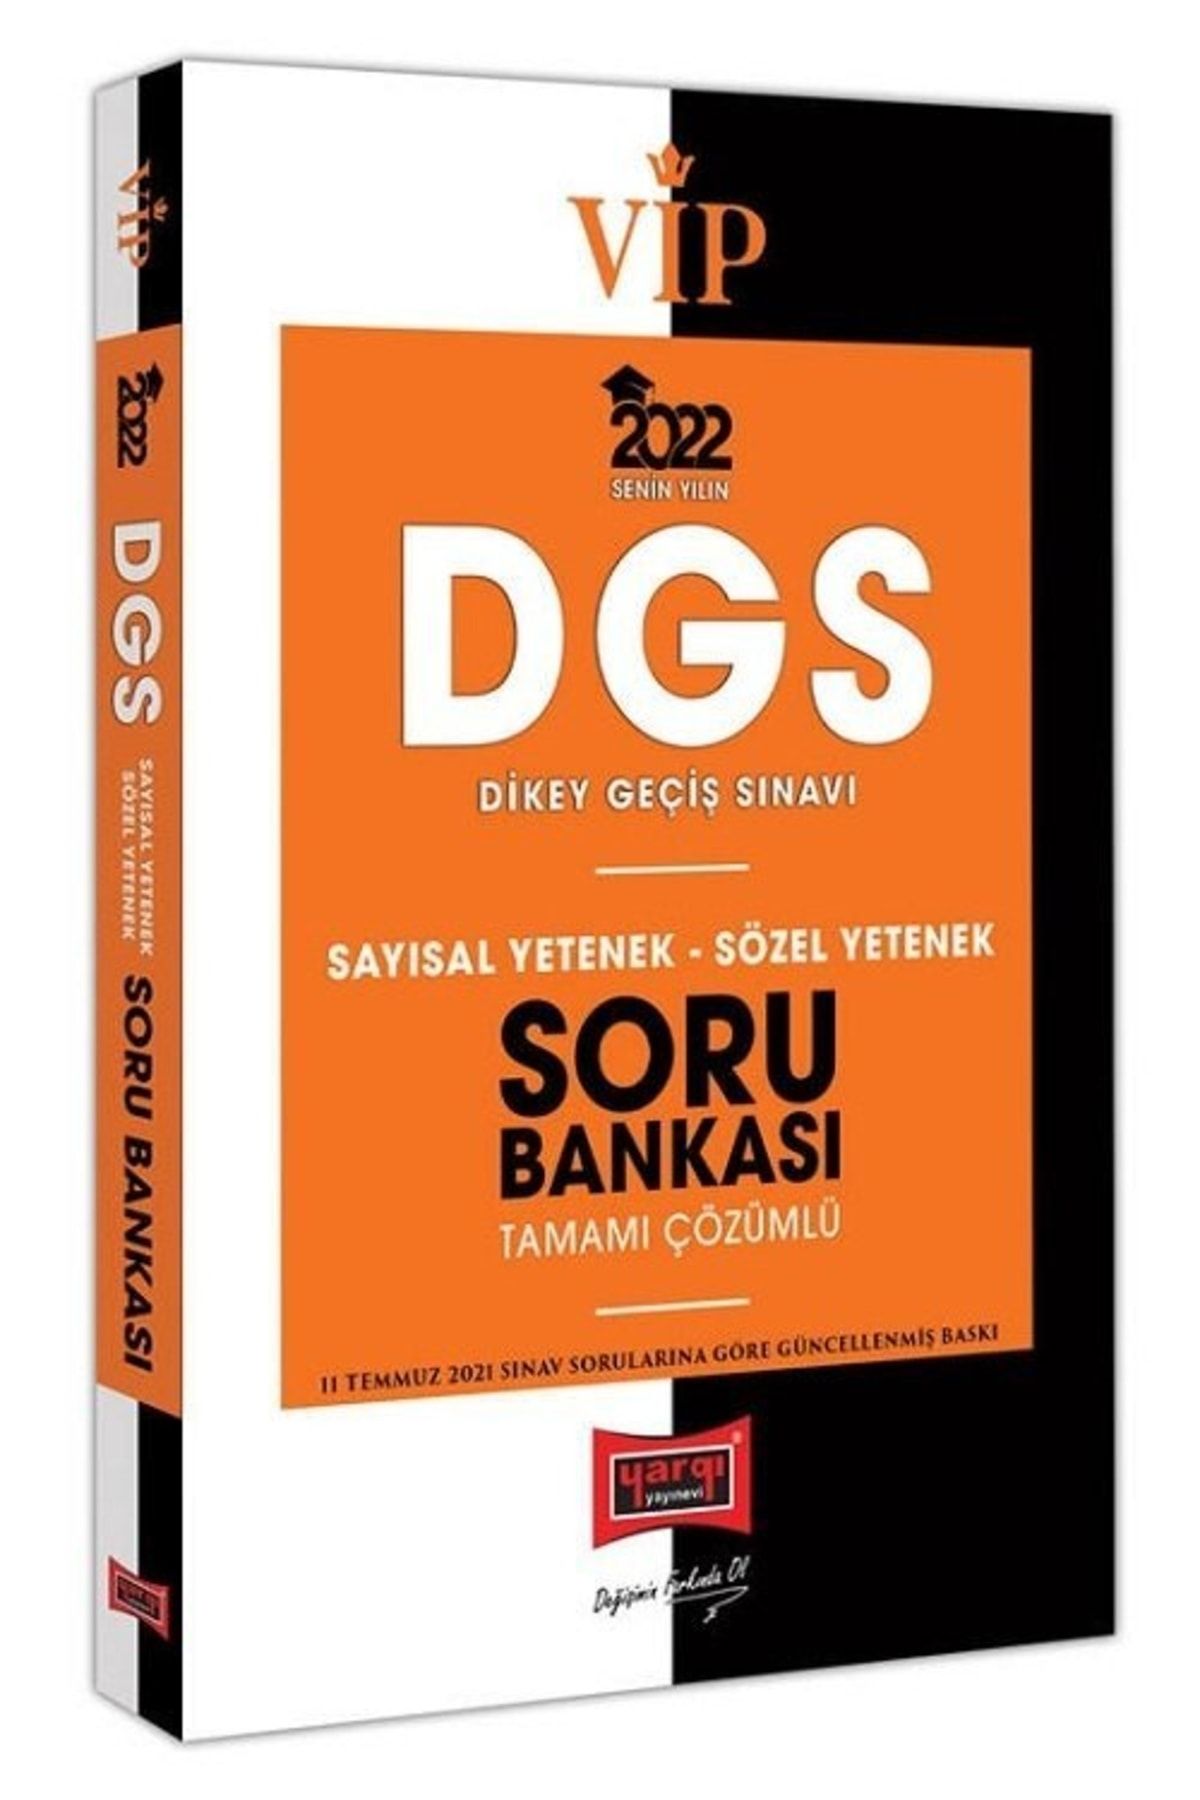 Yargı Yayınları 2022 Vip Dgs Sayısal Yetenek Sözel Yetenek Tamamı Çözümlü Soru Bankası